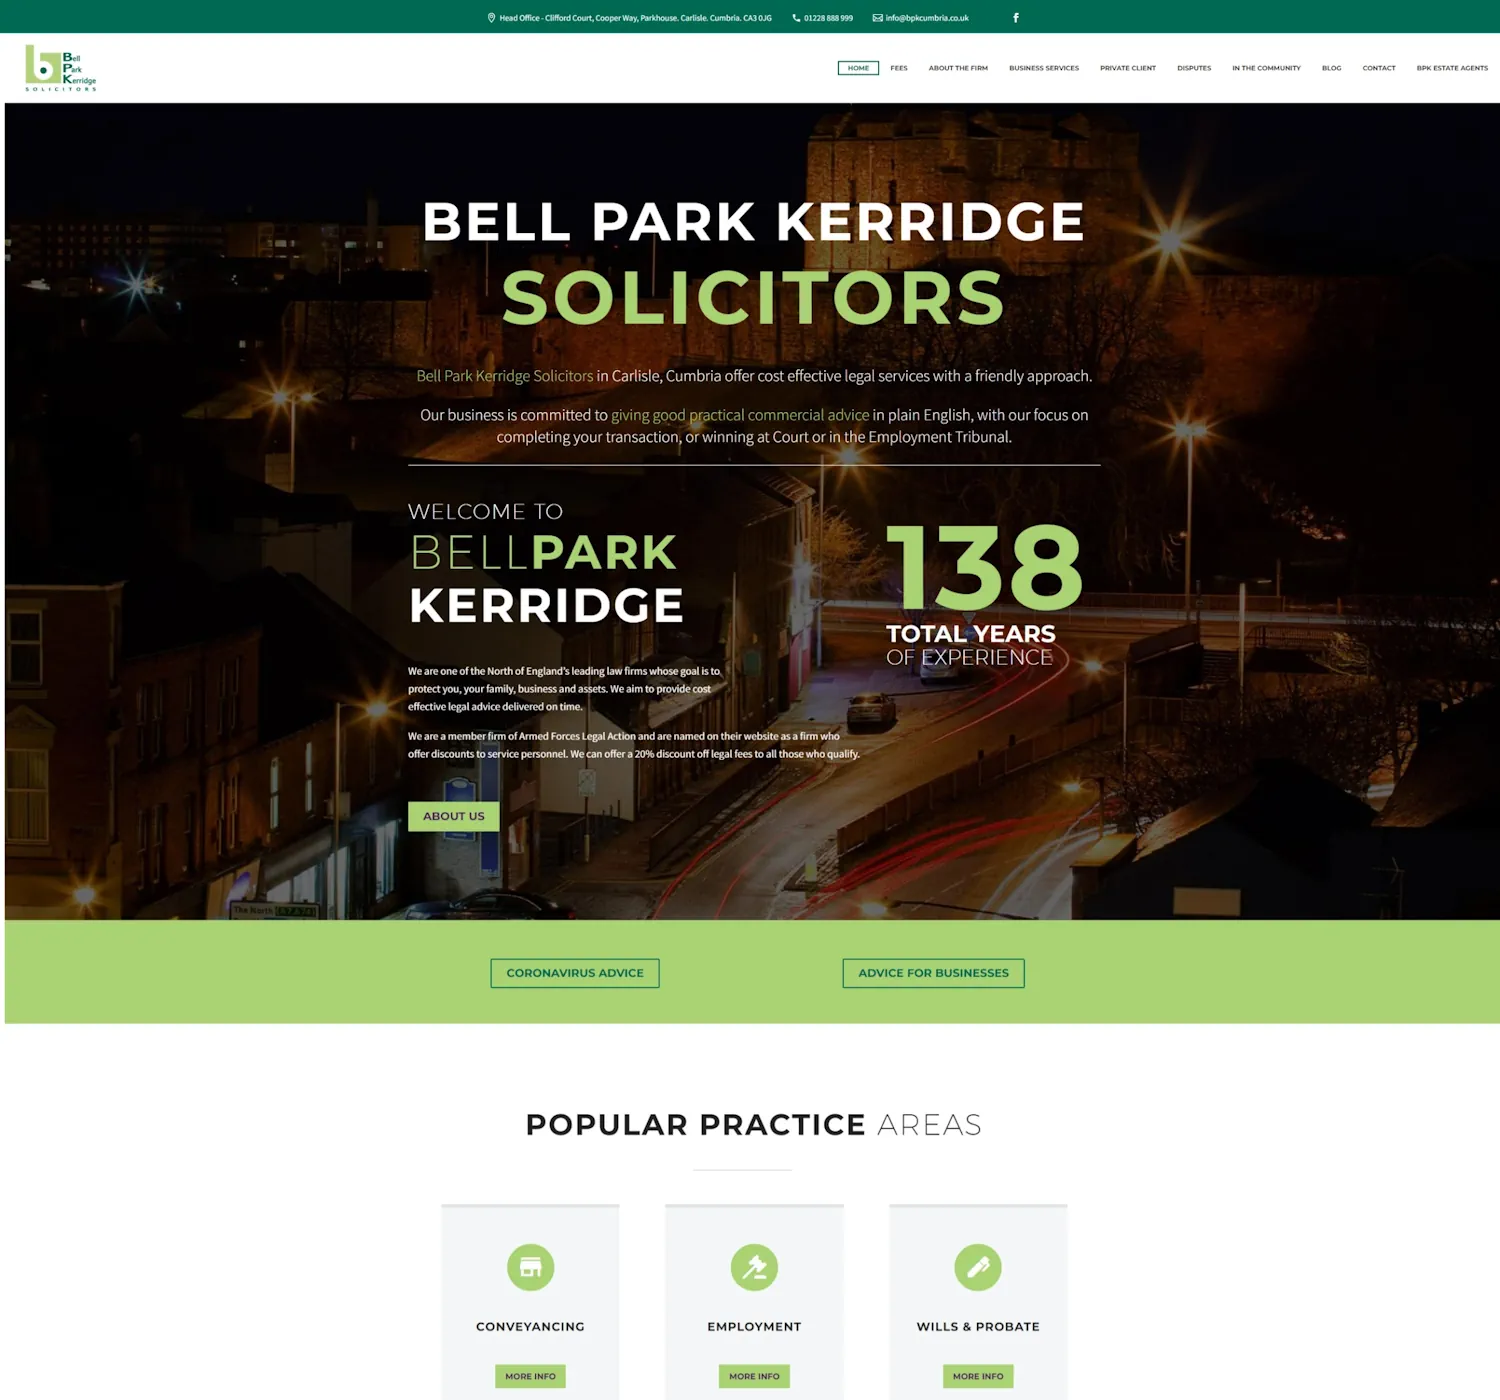 The BPK Solicitors original website